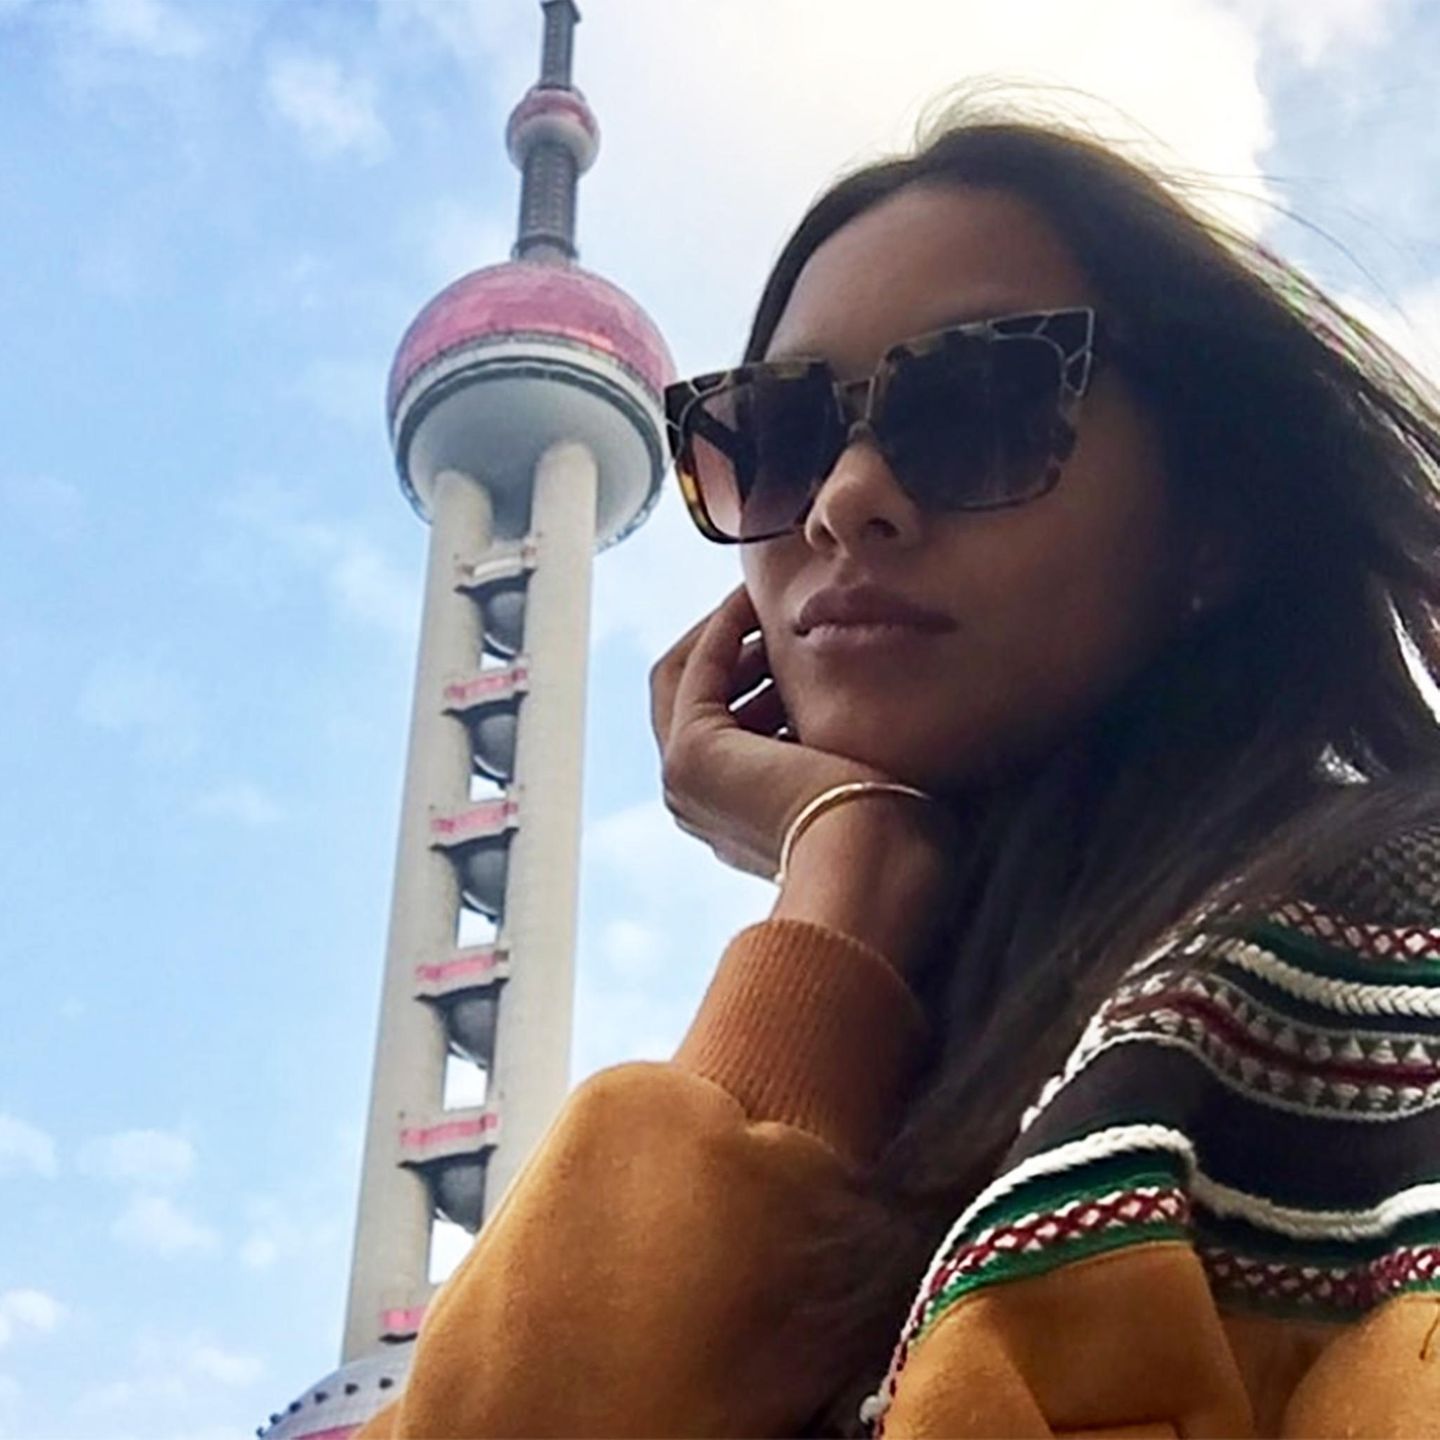 Lais Ribeiro macht nach ihrer Ankunft in Shanghai gleich ein wenig Sightseeing und postet dieses Selfie mit dem berühmten Oriental Pearl Tower, dem dritthöchsten Fernsehturm Asiens.